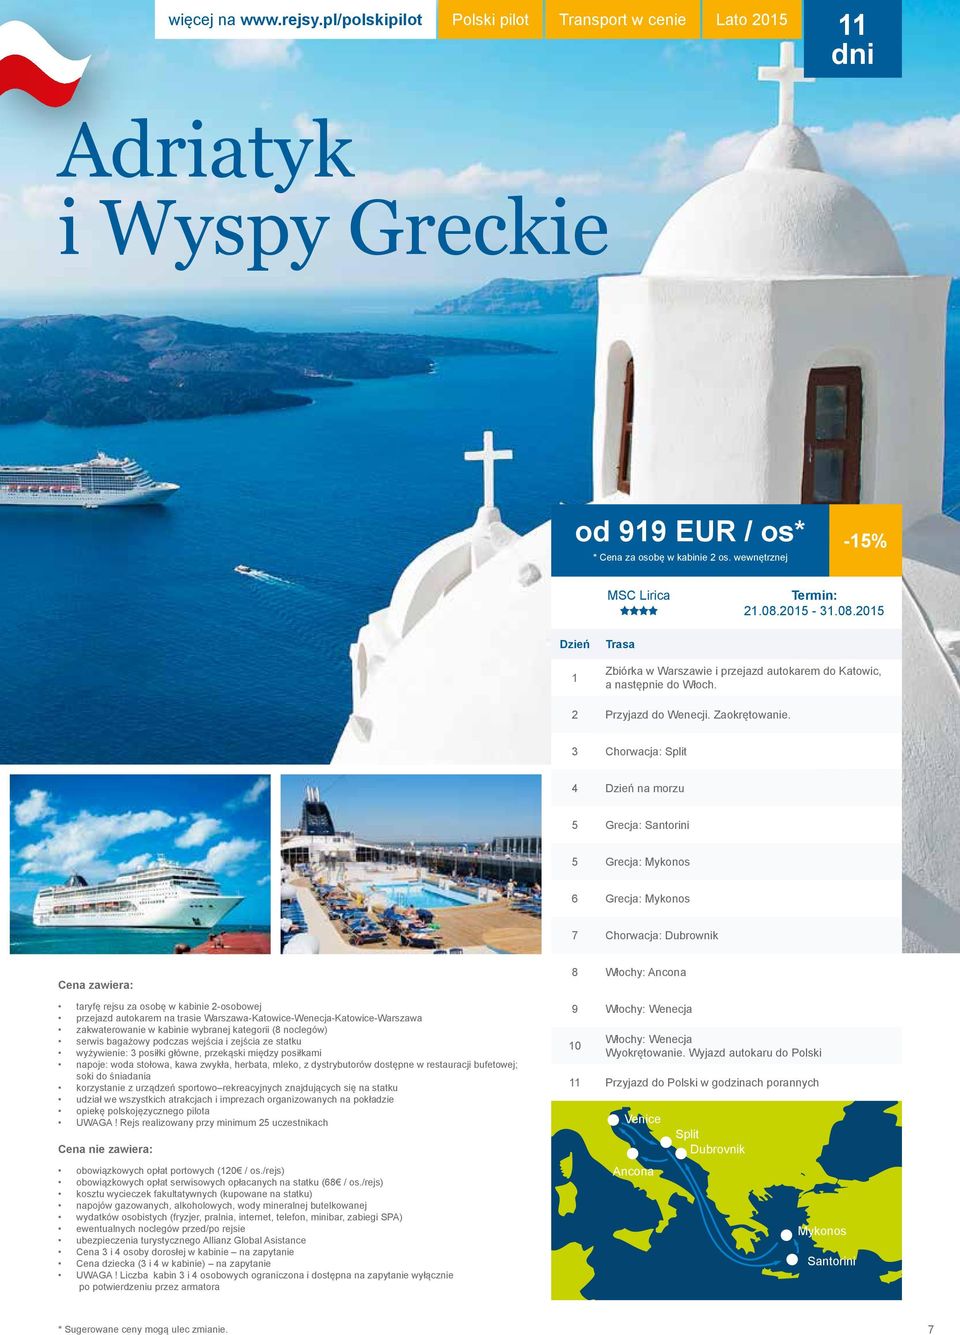 3 Chorwacja: Split 4 Dzień na morzu 5 Grecja: Santorini 5 Grecja: Mykonos 6 Grecja: Mykonos 7 Chorwacja: Dubrownik Cena zawiera: taryfę rejsu za osobę w kabinie 2-osobowej przejazd autokarem na